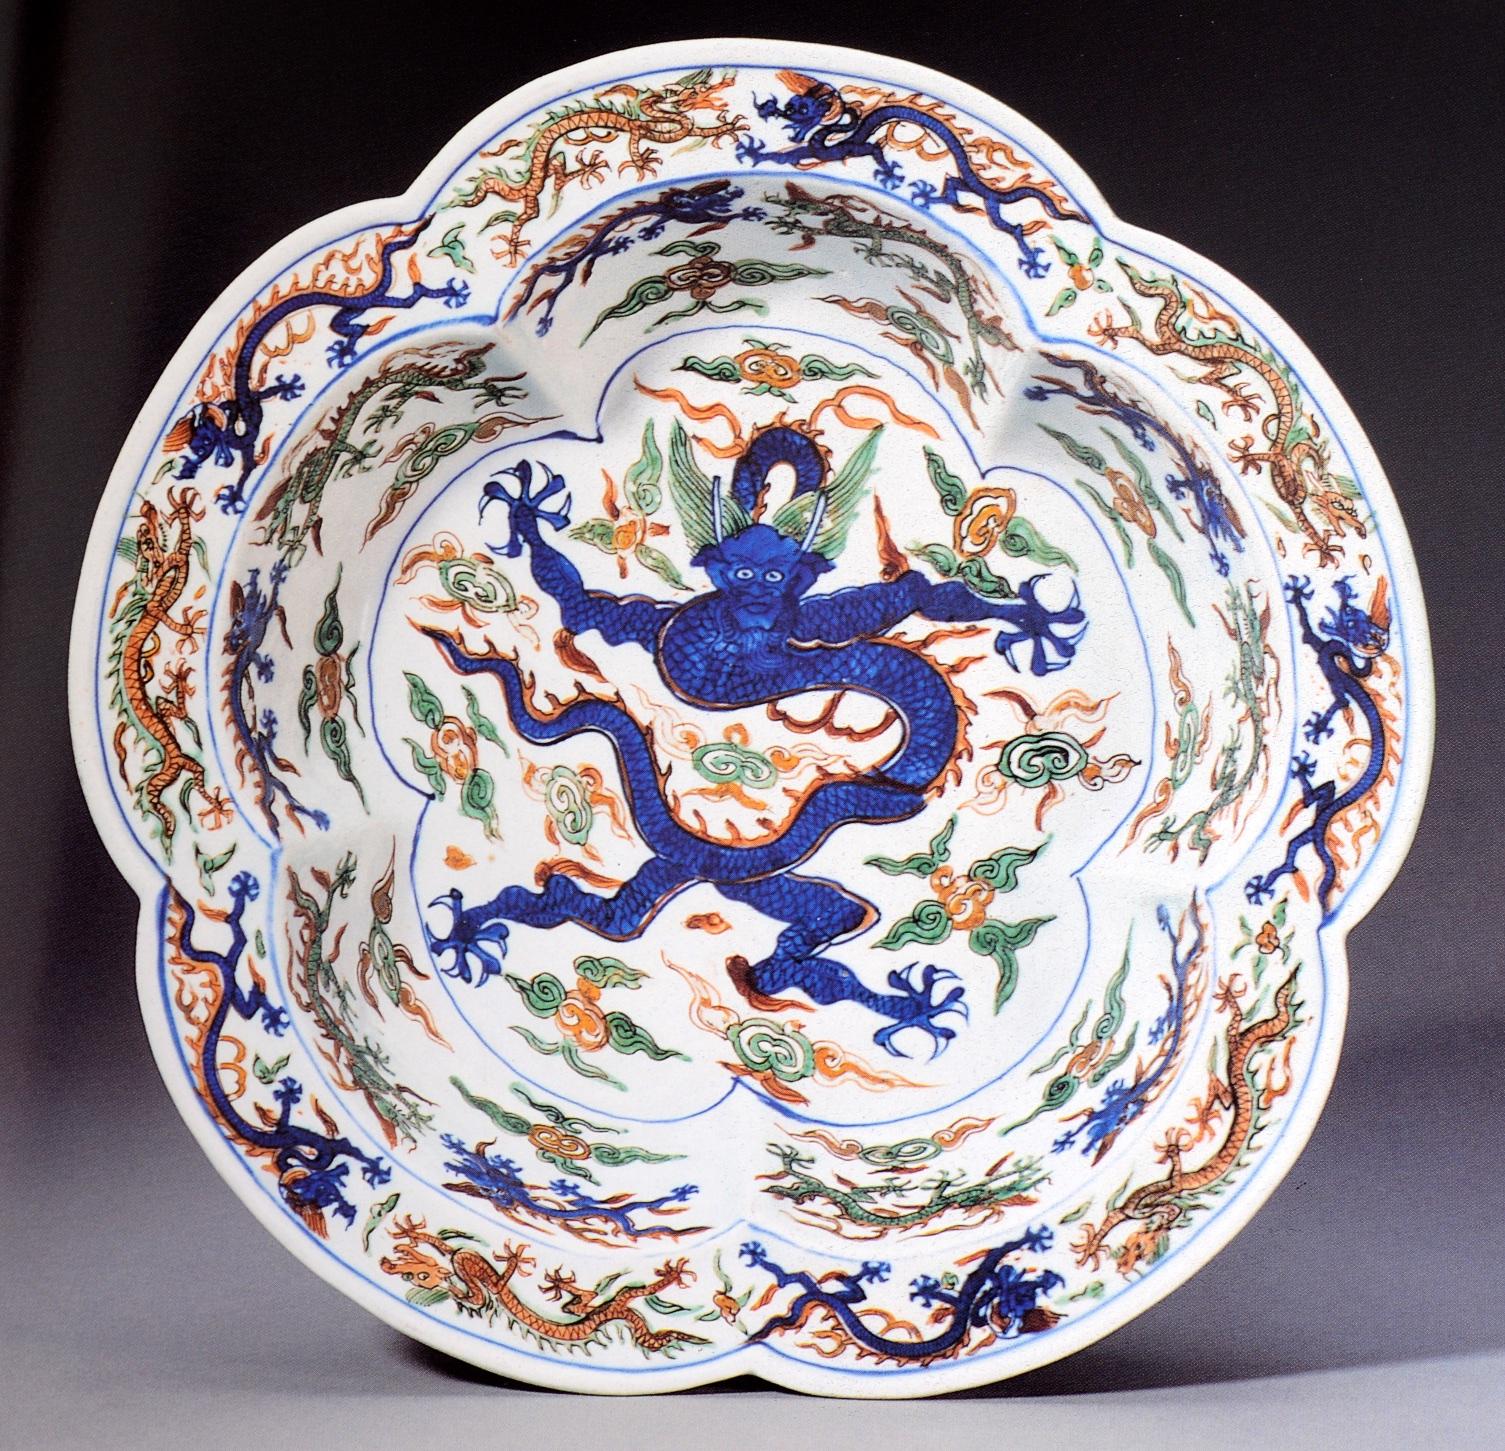 The Jingguantang Collection Part III fine and important Chinese ceramics and Works of Art, Christie's; New York September 18, 1997. Erste Ausgabe in Softcover mit 168 Losen, die alle in Farbe fotografiert und vollständig beschrieben sind. Ein